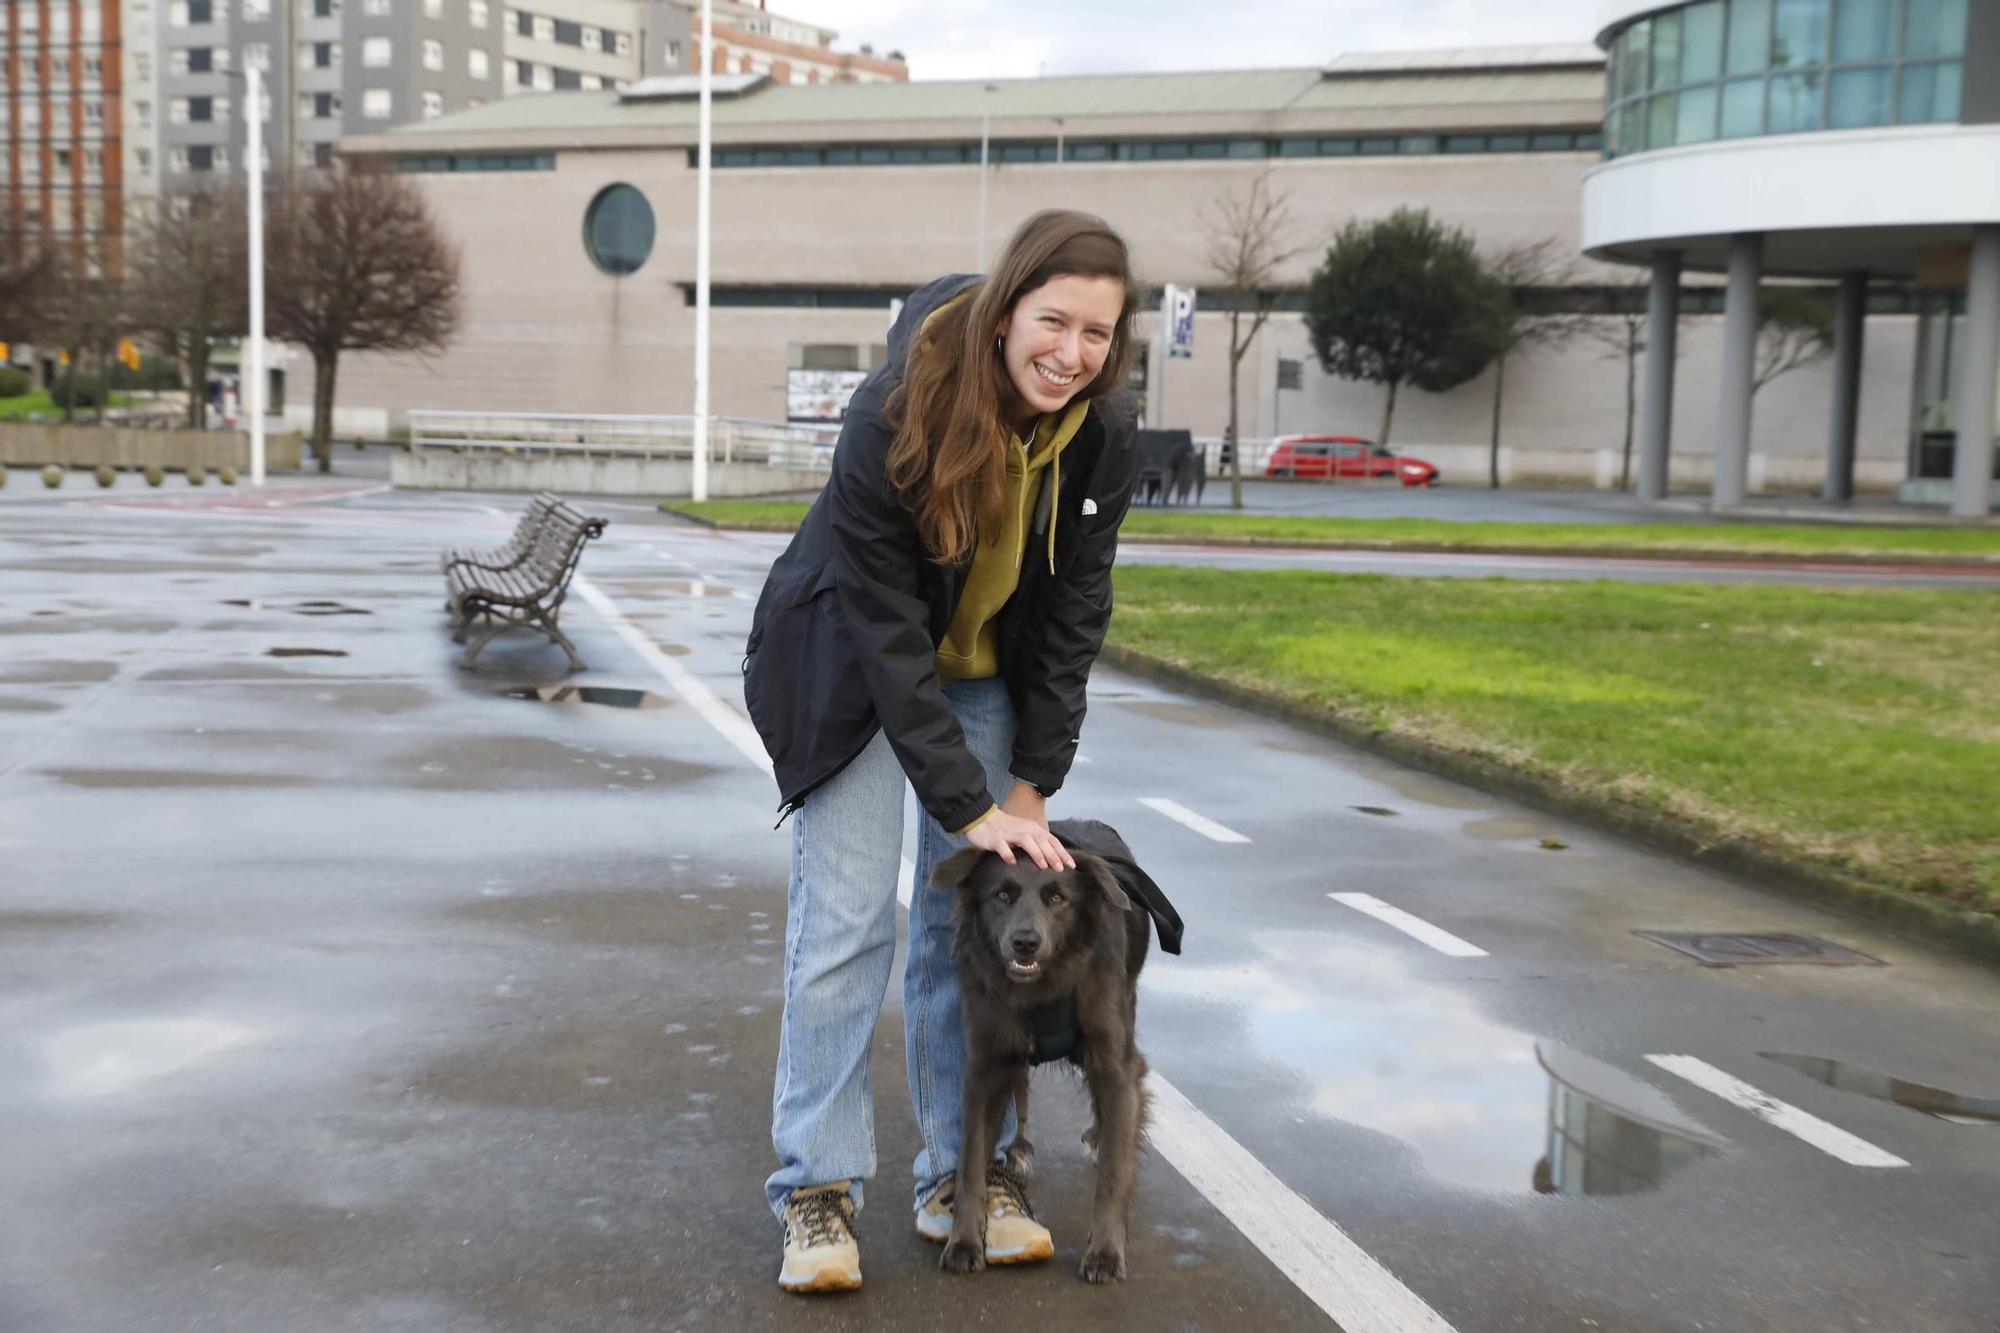 Una tendencia canina asumida en Gijón (en imágenes)